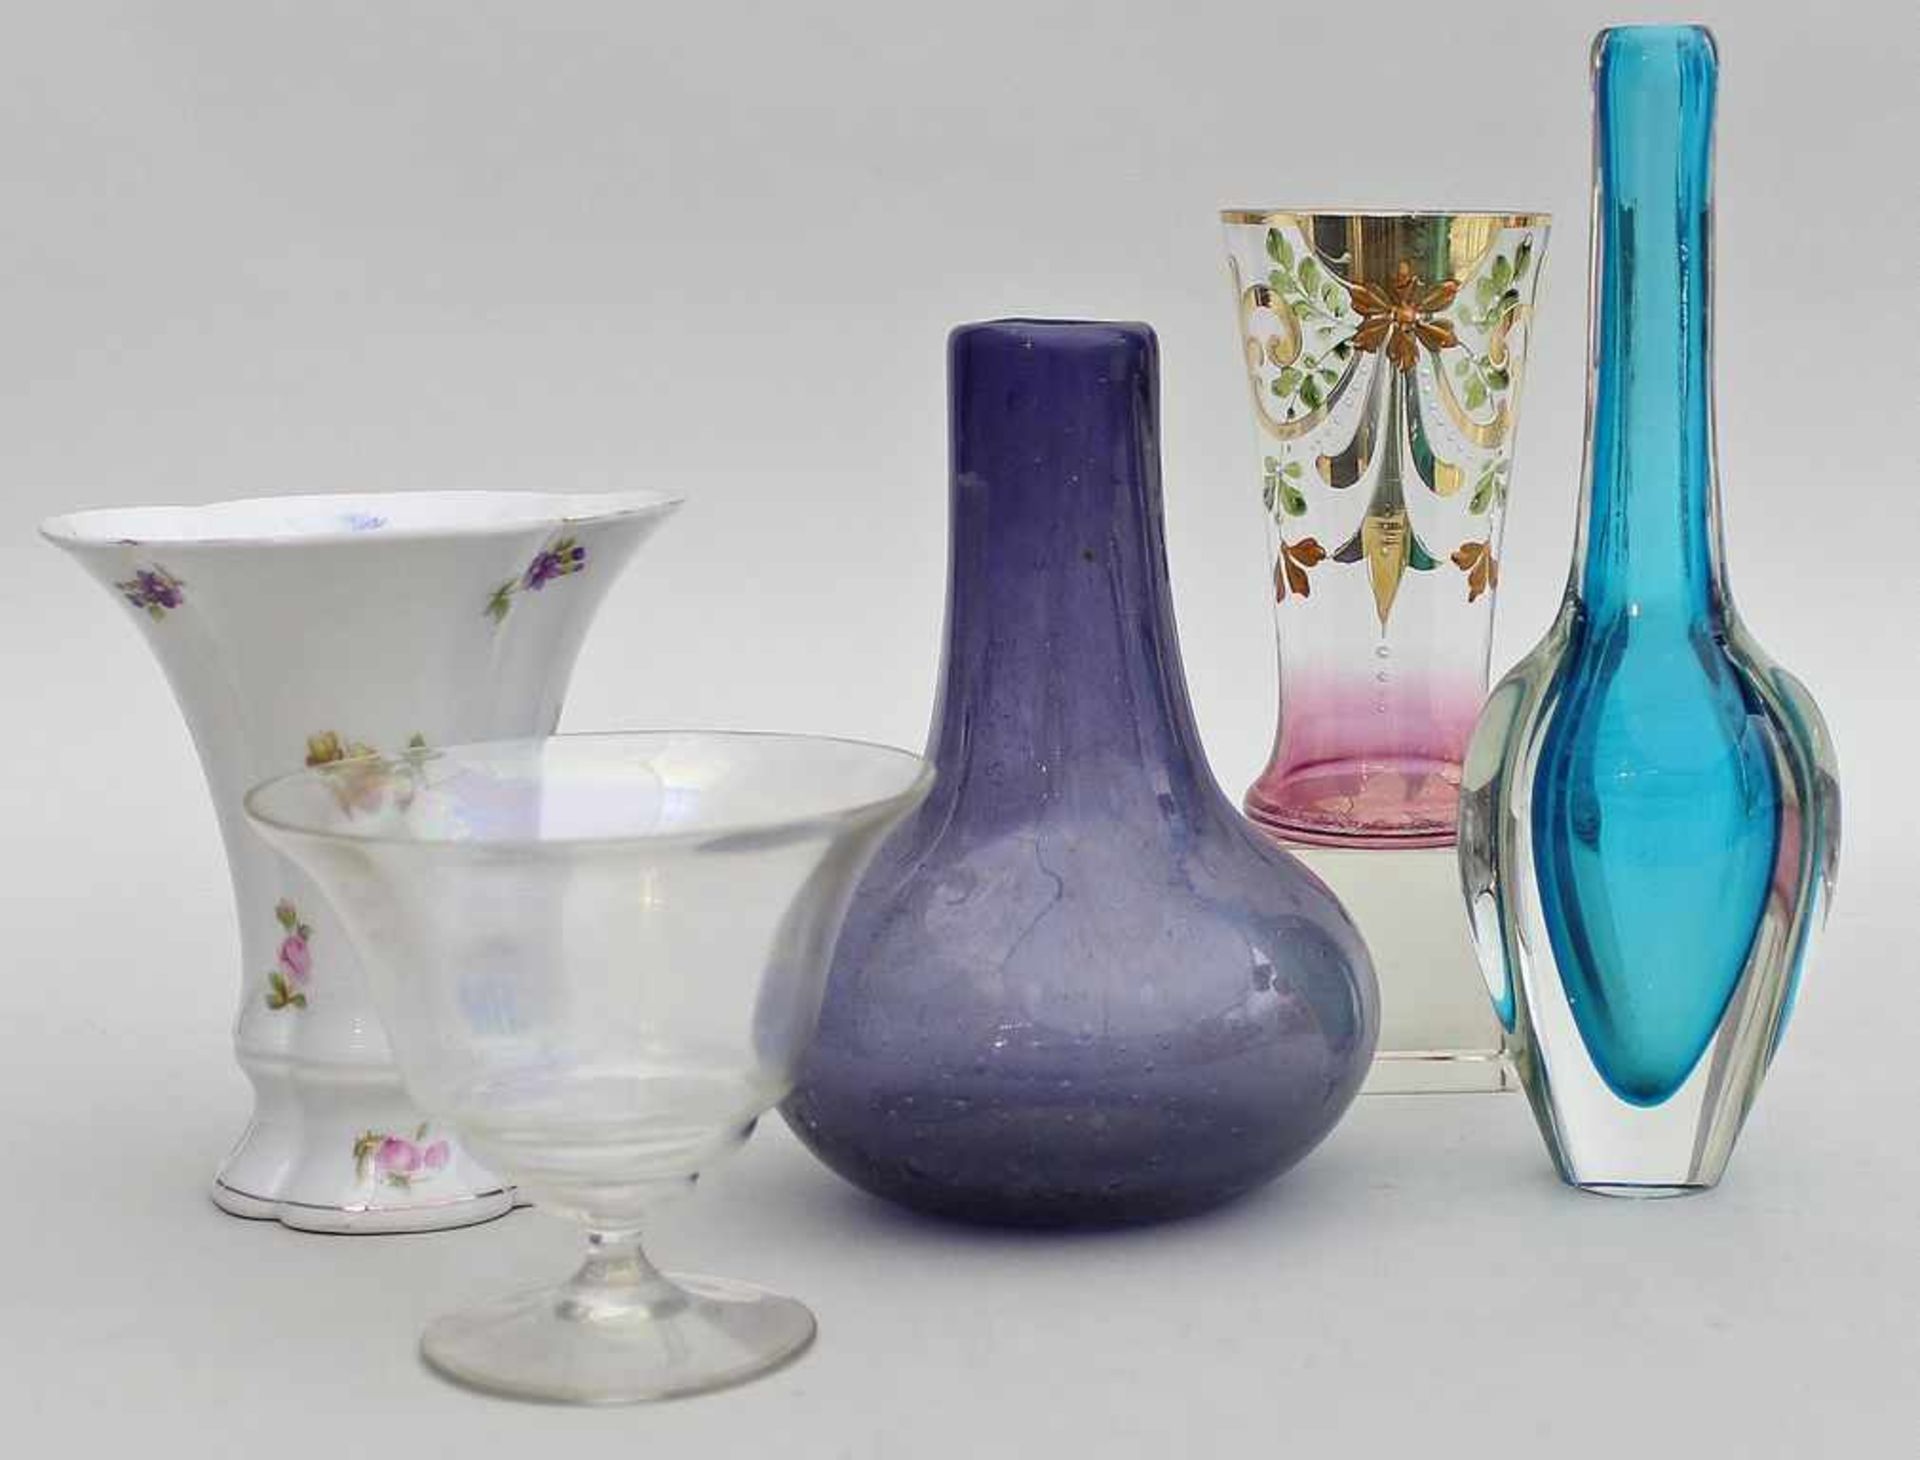 Becher und 4 div. Vasen.Glas bzw. Porzellan, teils farbig staffiert. Becher best. 20. Jh. H. 10